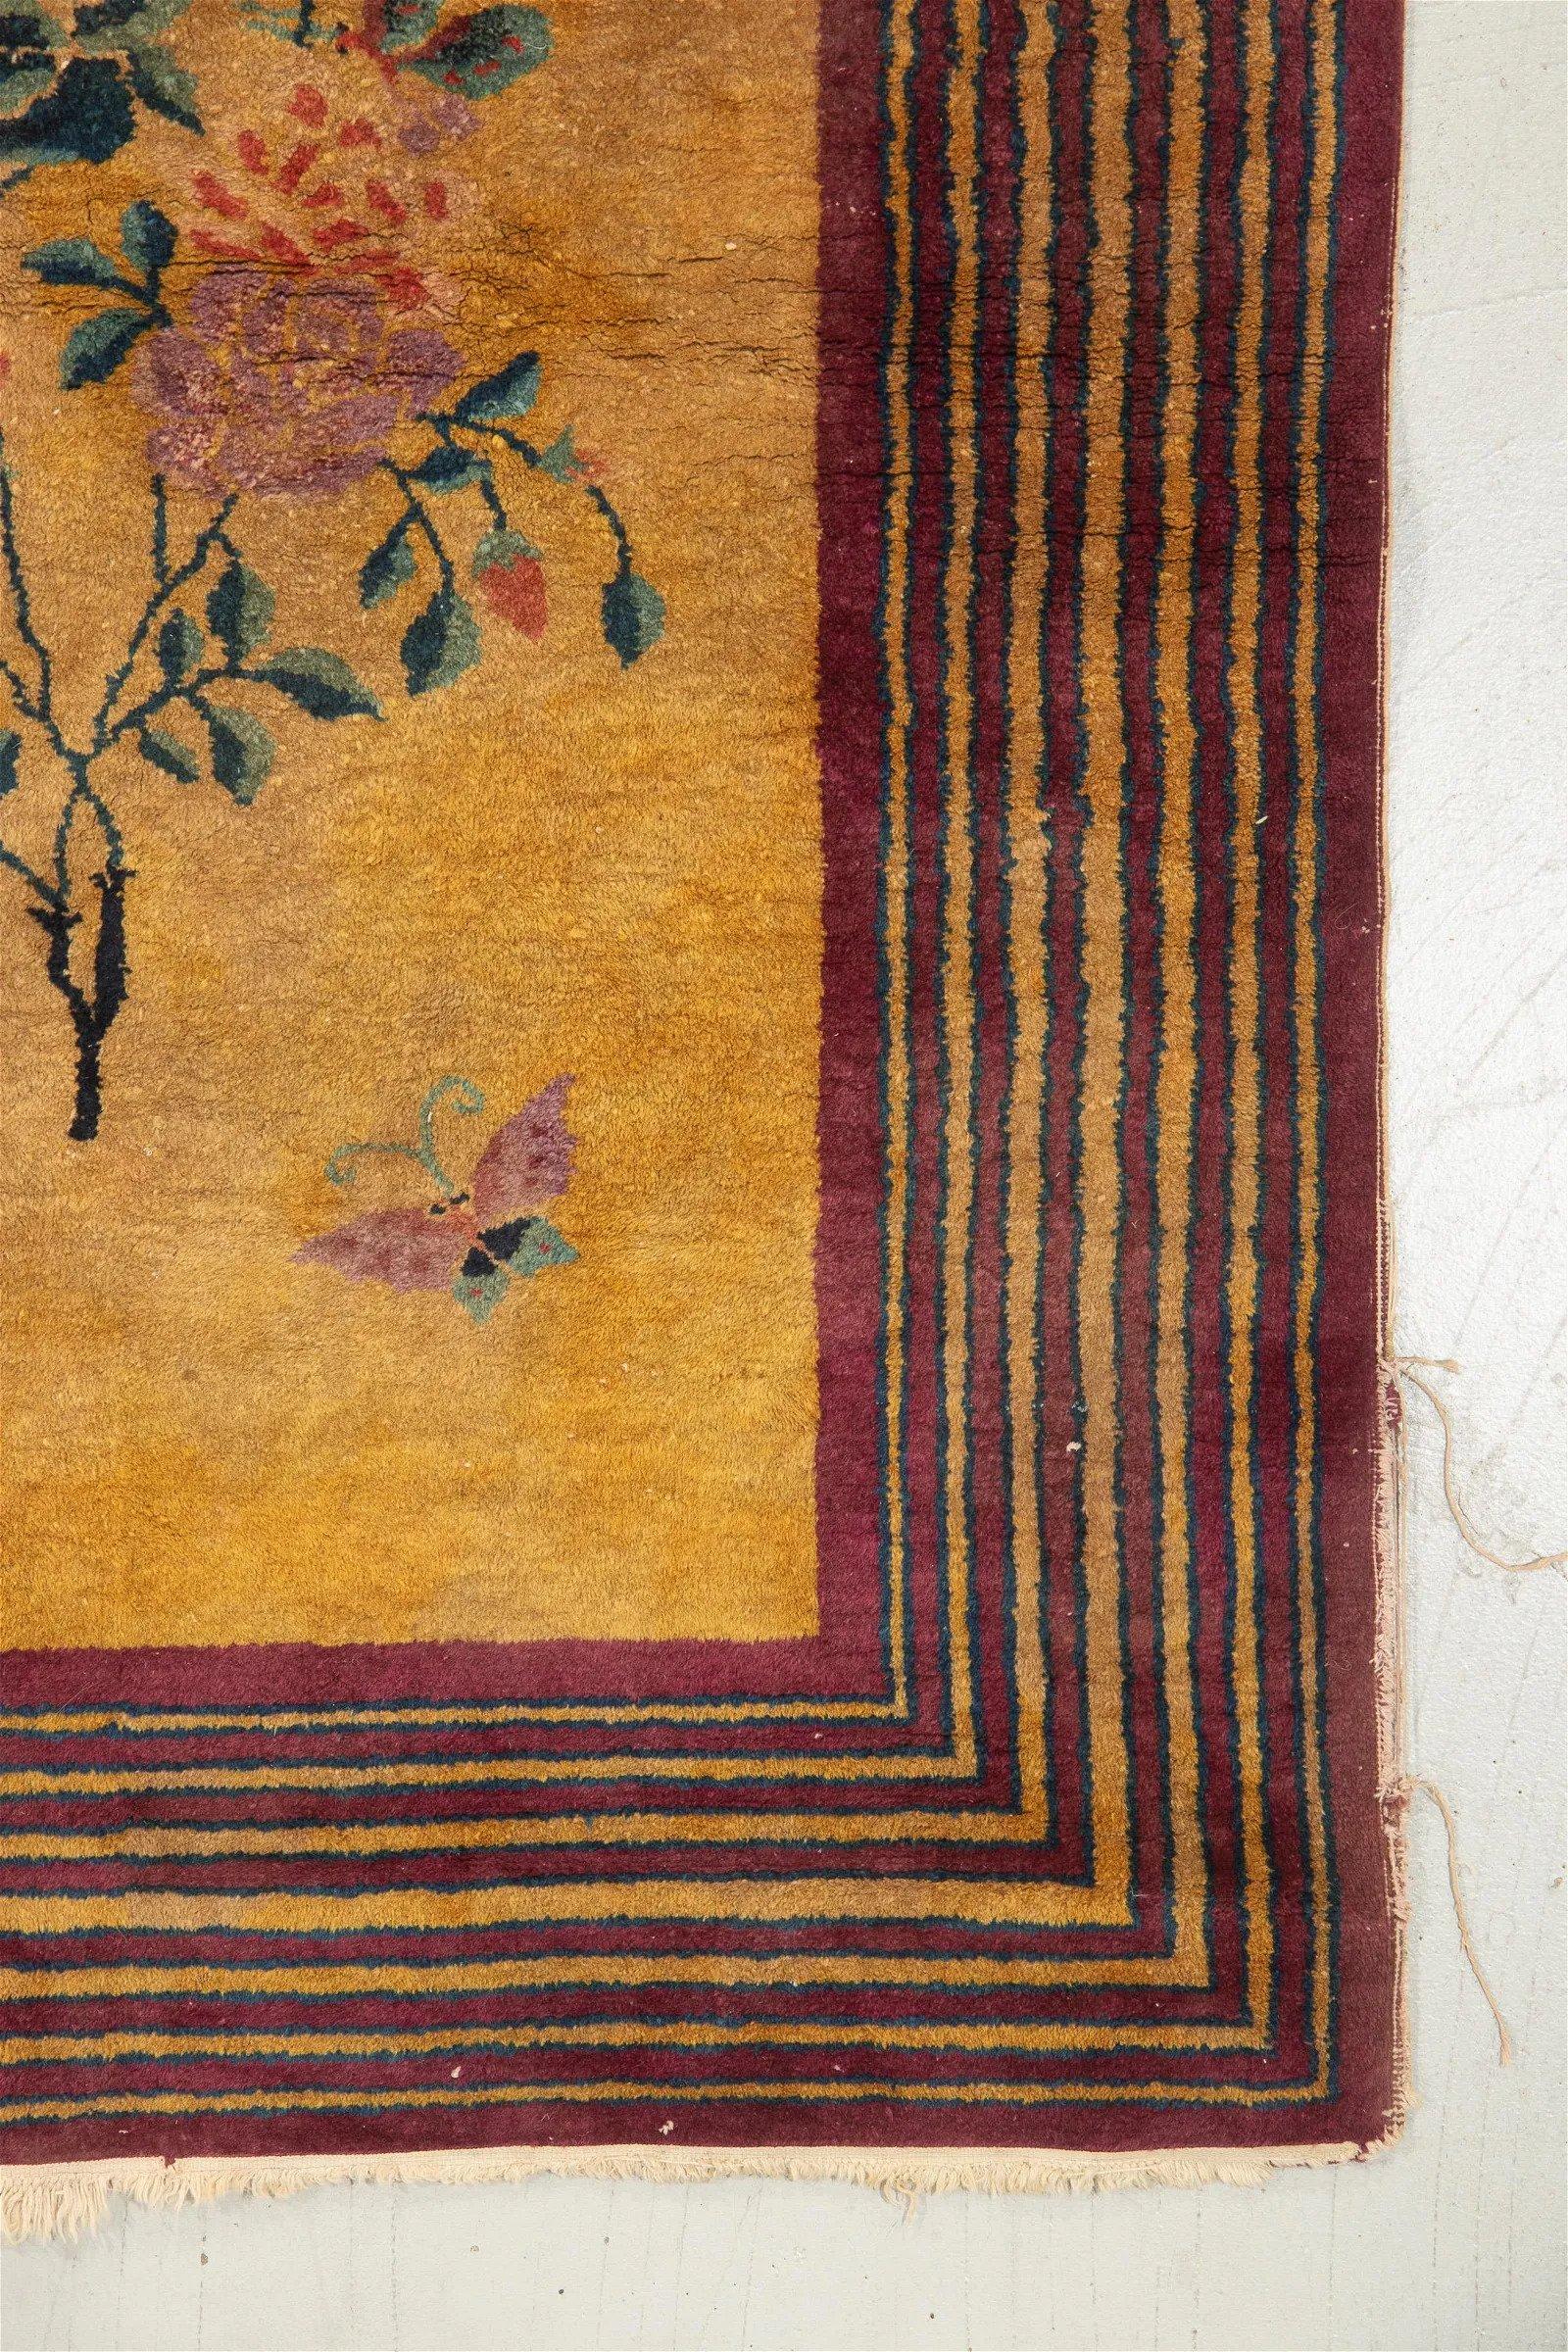 Handgefertigter antiker chinesischer Art-Déco-Teppich im Originalzustand, ca. Anfang des 20. Jahrhunderts.

MATERIAL: Flor aus Wolle, Kette aus Baumwolle, Schuss aus Baumwolle.